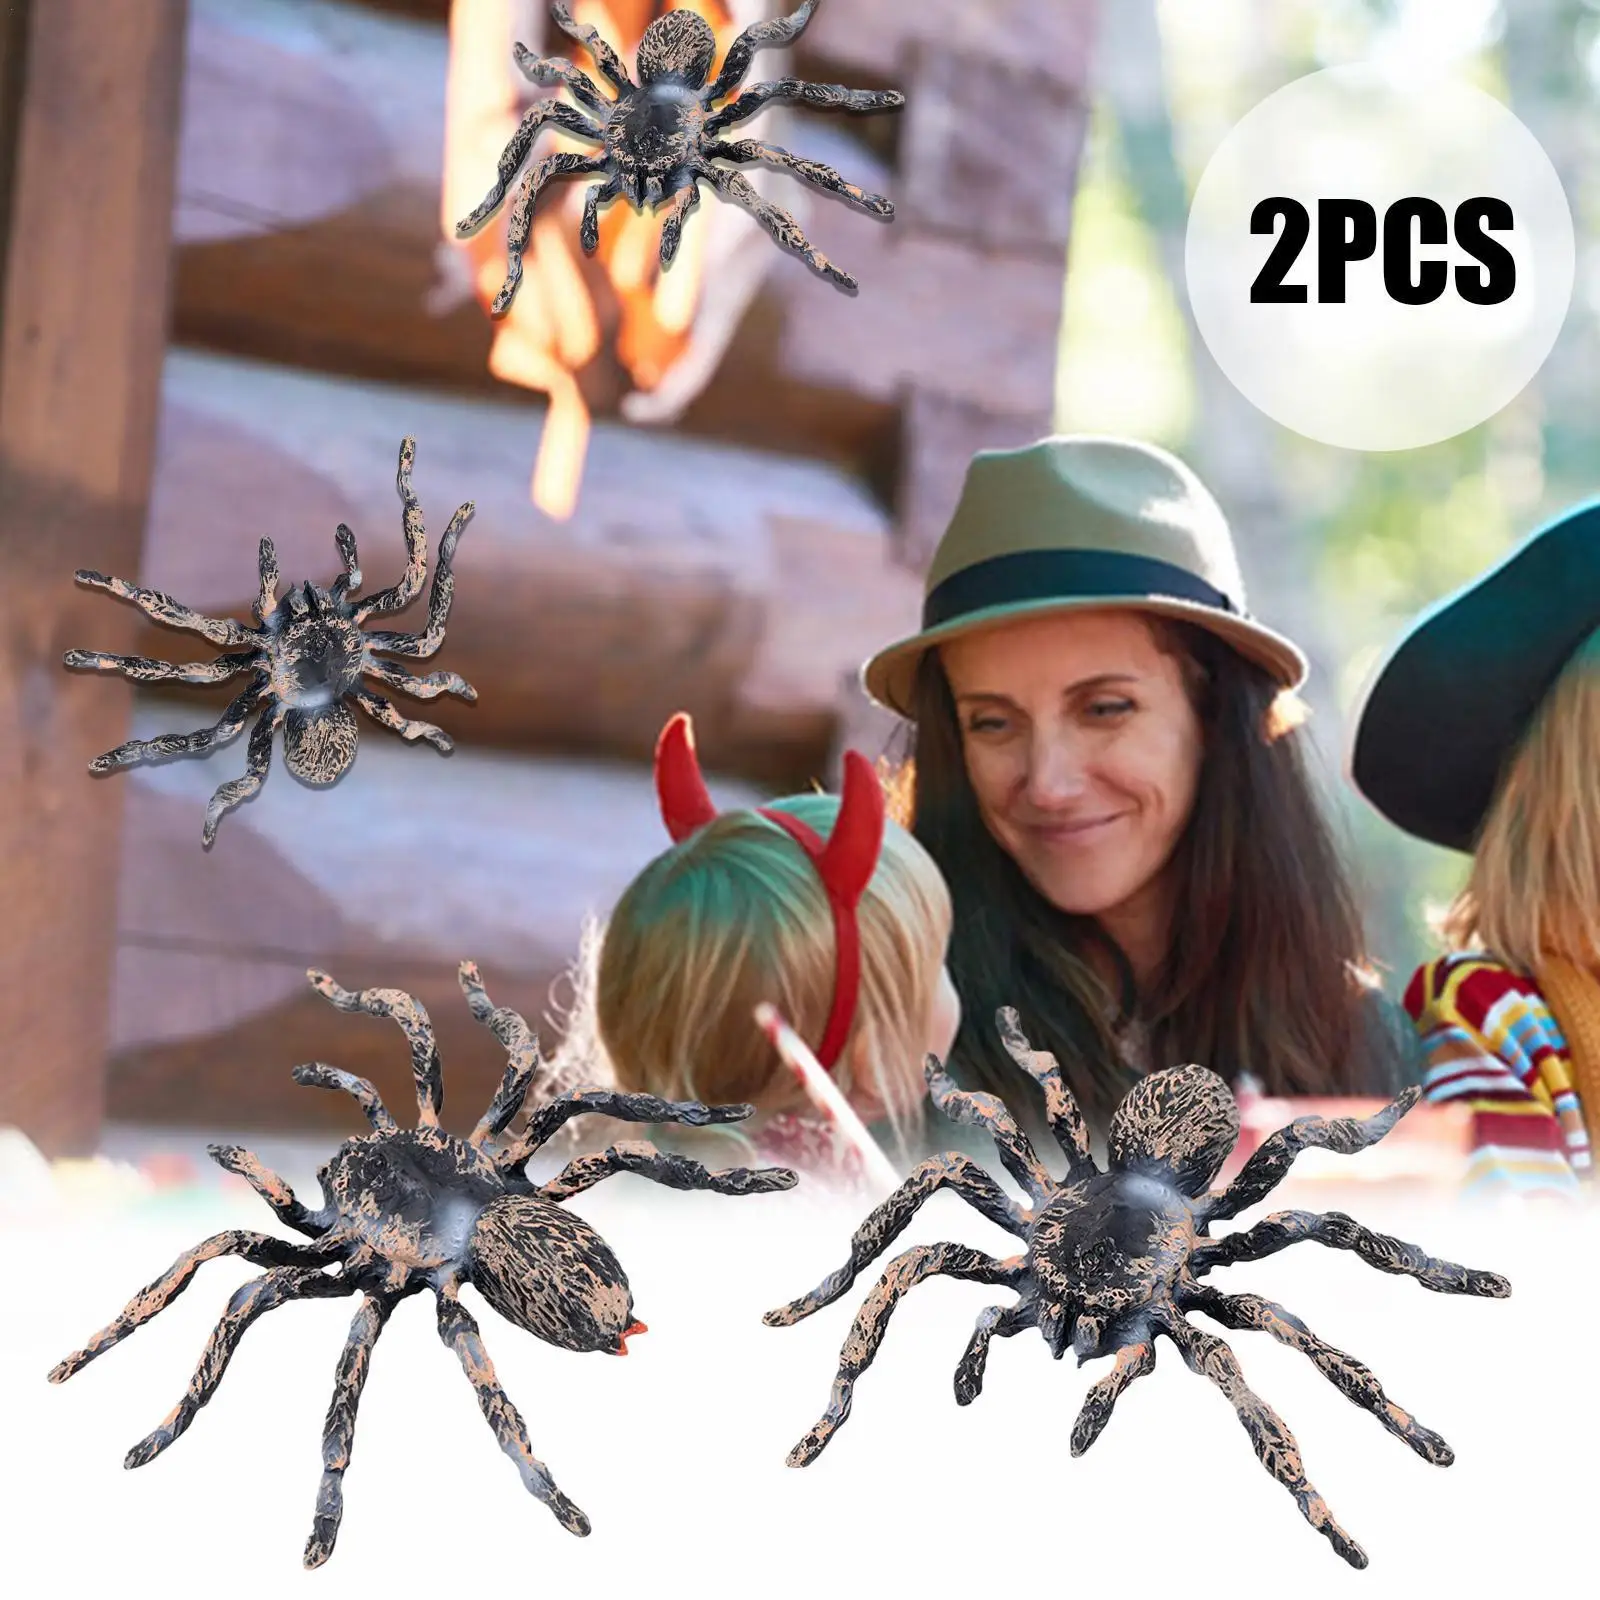 

Реалистичный пластиковый искусственный паук, 2 шт., 9,5 см, реквизит в виде насекомых, украшения для Хэллоуина, игрушечные пауки F9r3